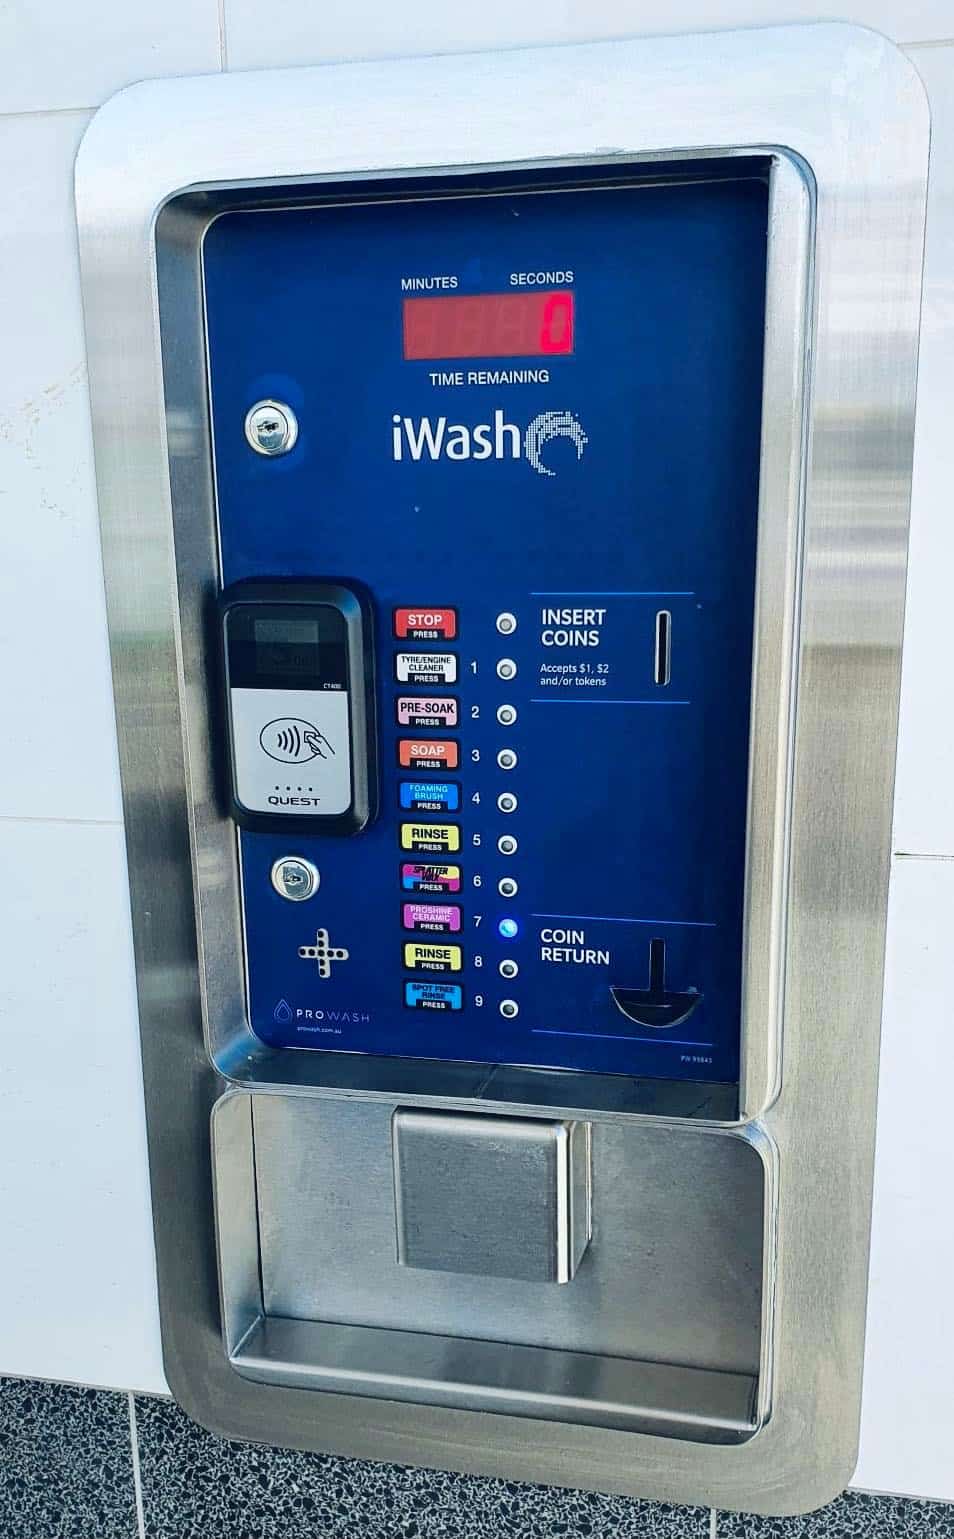 Car wash entry unit for iWash Self-serve car wash